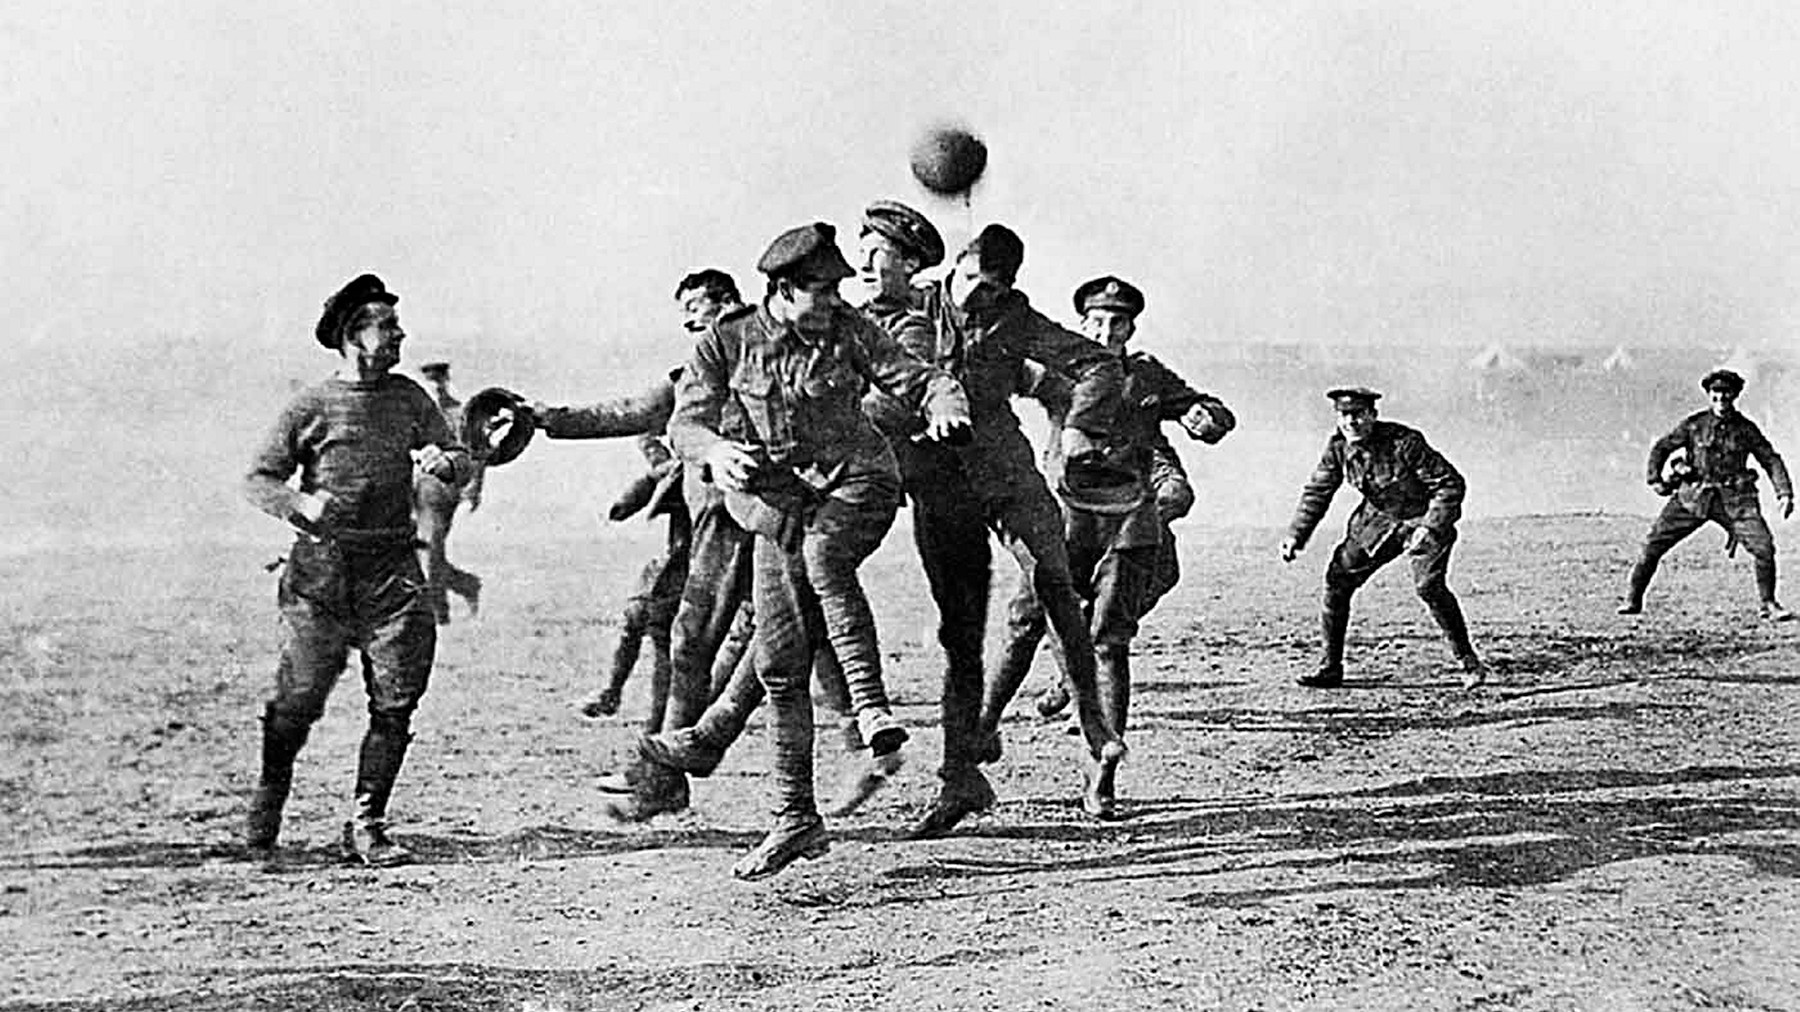 Војници играју футбал током Божићног примирја 1914. године